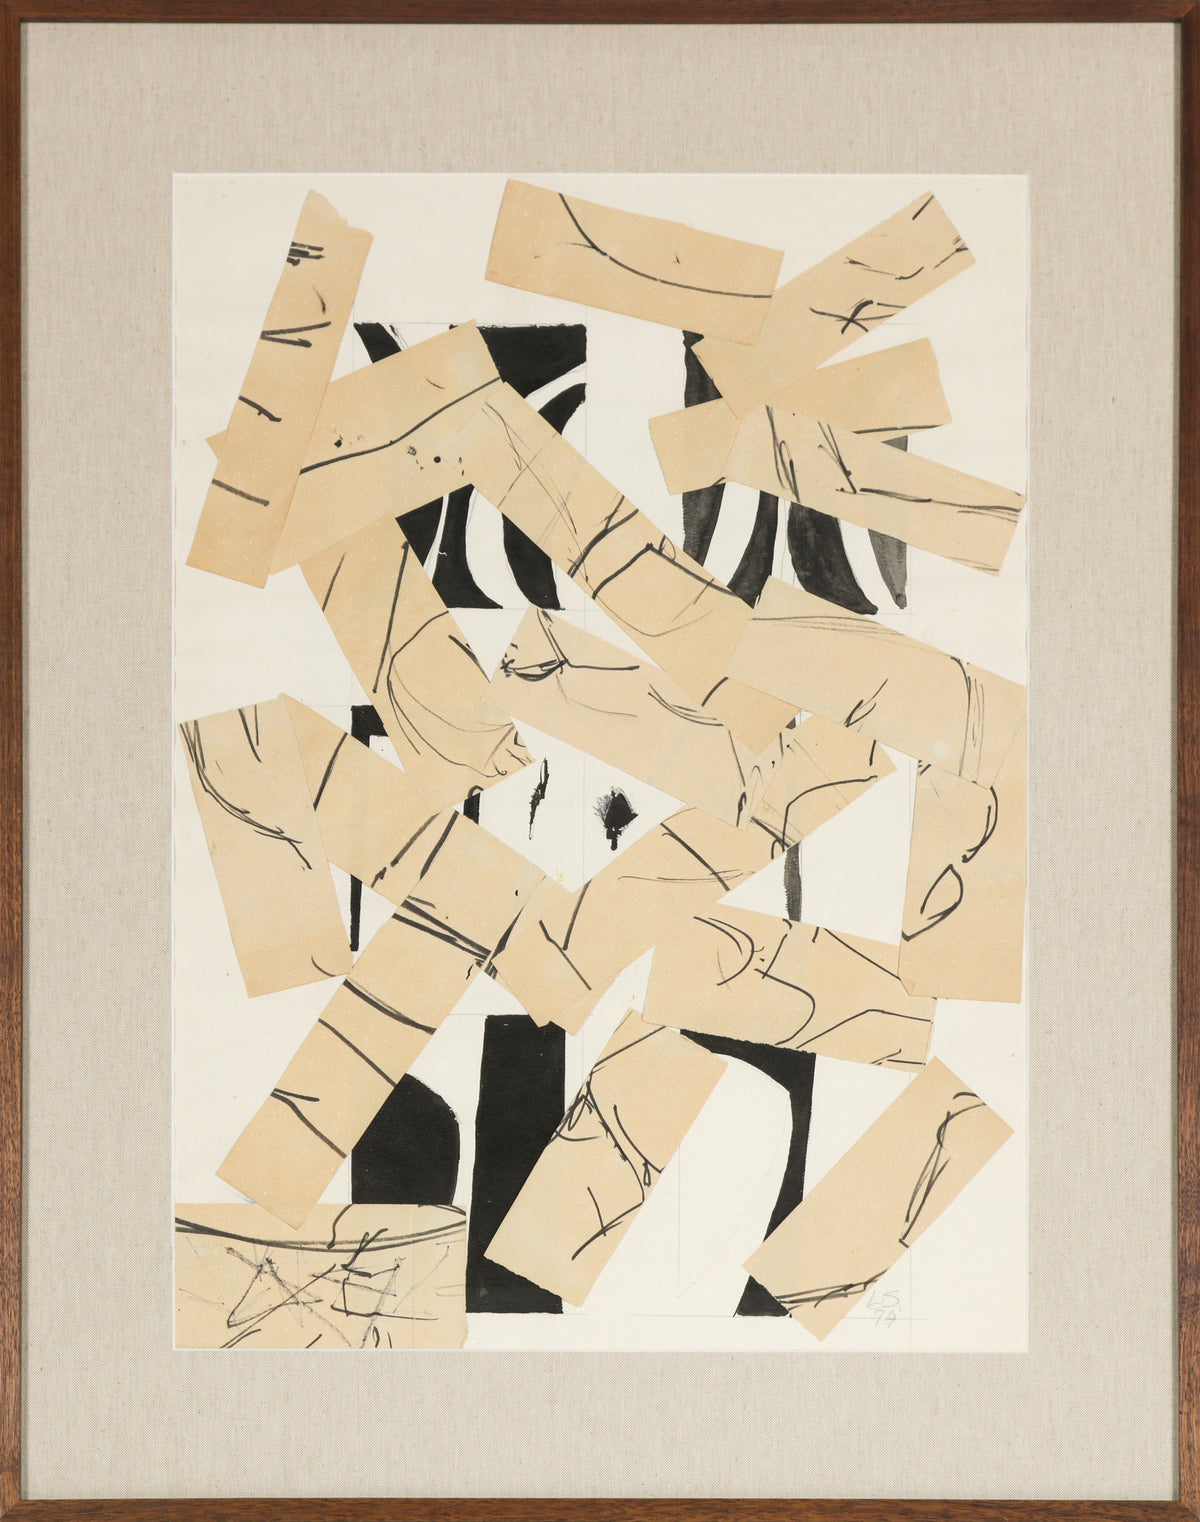 Monochrome Modernist Abstract &lt;br&gt;1974 Collage &lt;br&gt;&lt;br&gt;#B5387